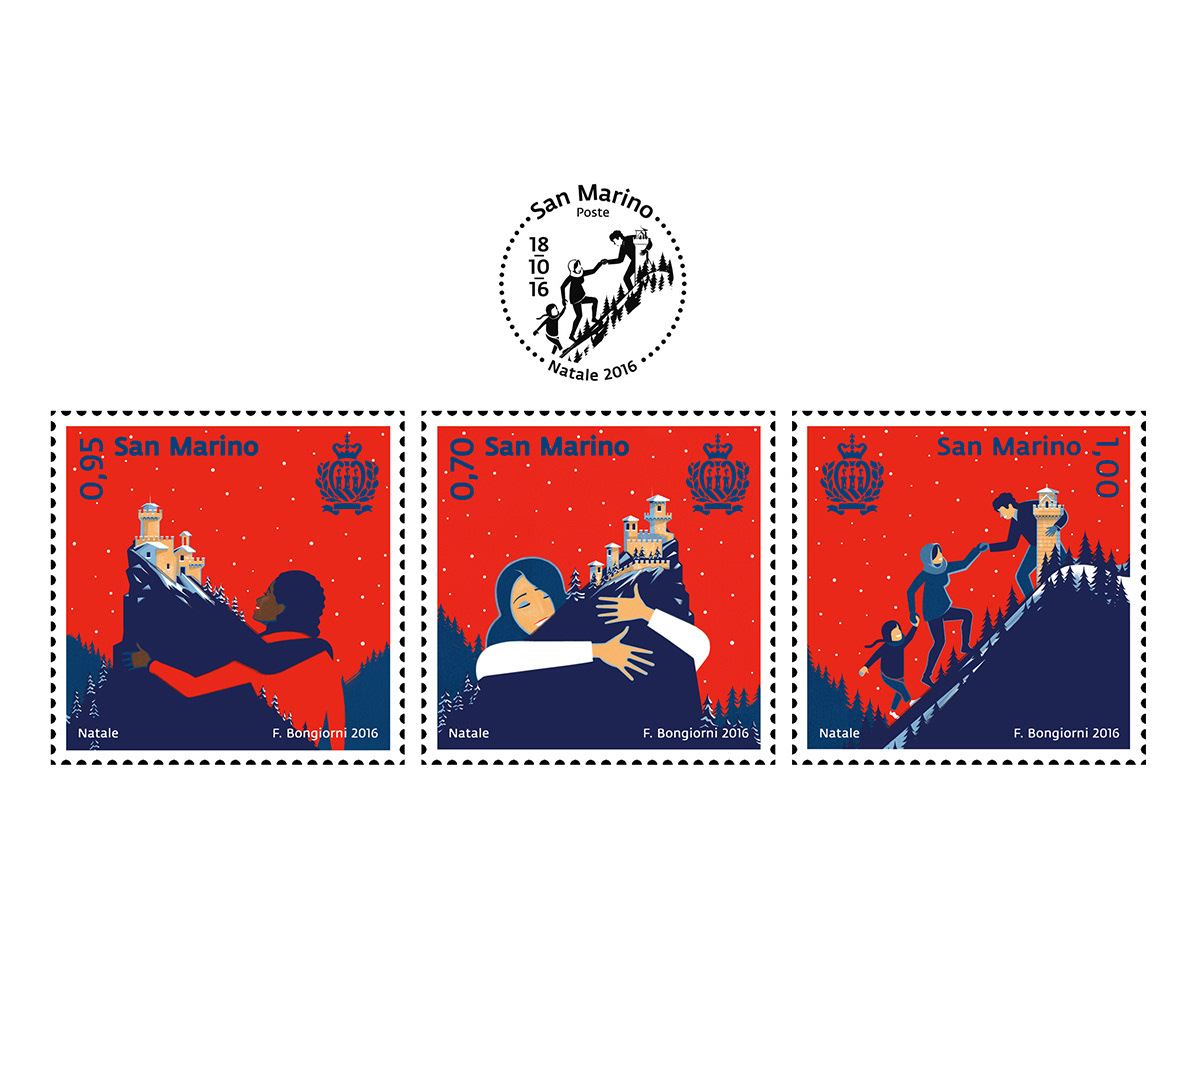 San Marino Stamps, Christmas Series "Hospitality", 2016